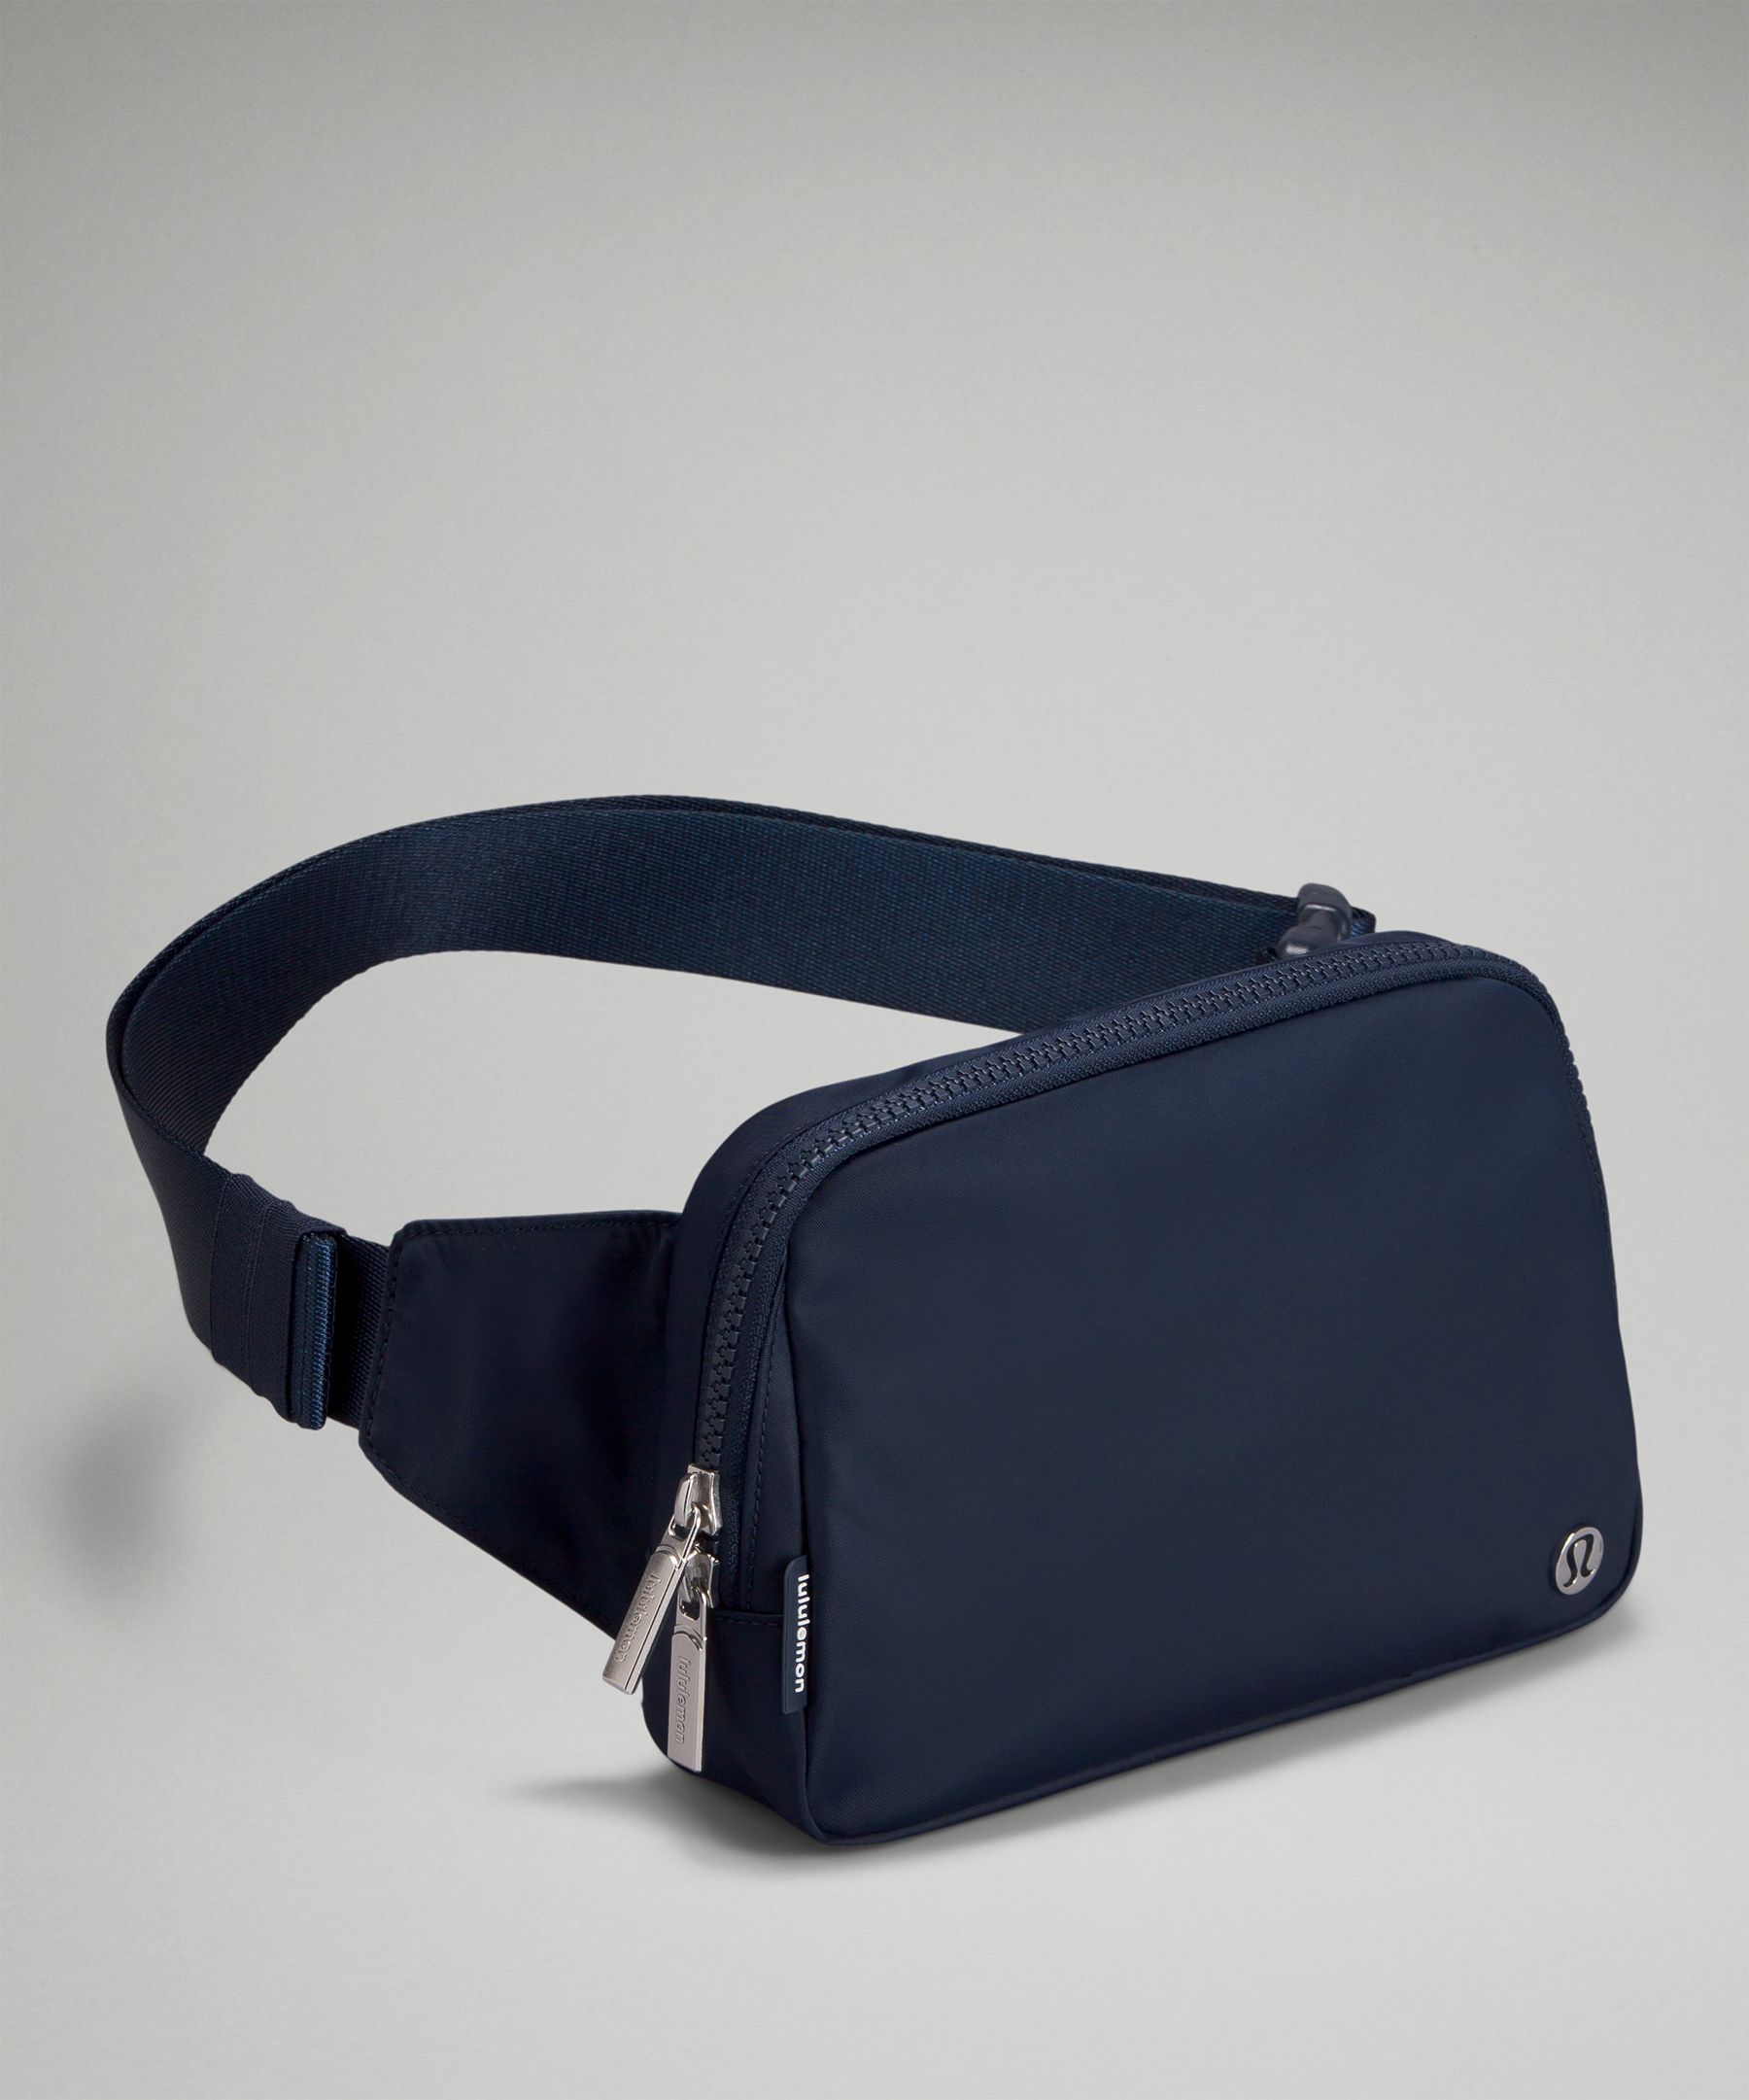 Fanny Pack Extender Belt Bag Adjustable Elastic India